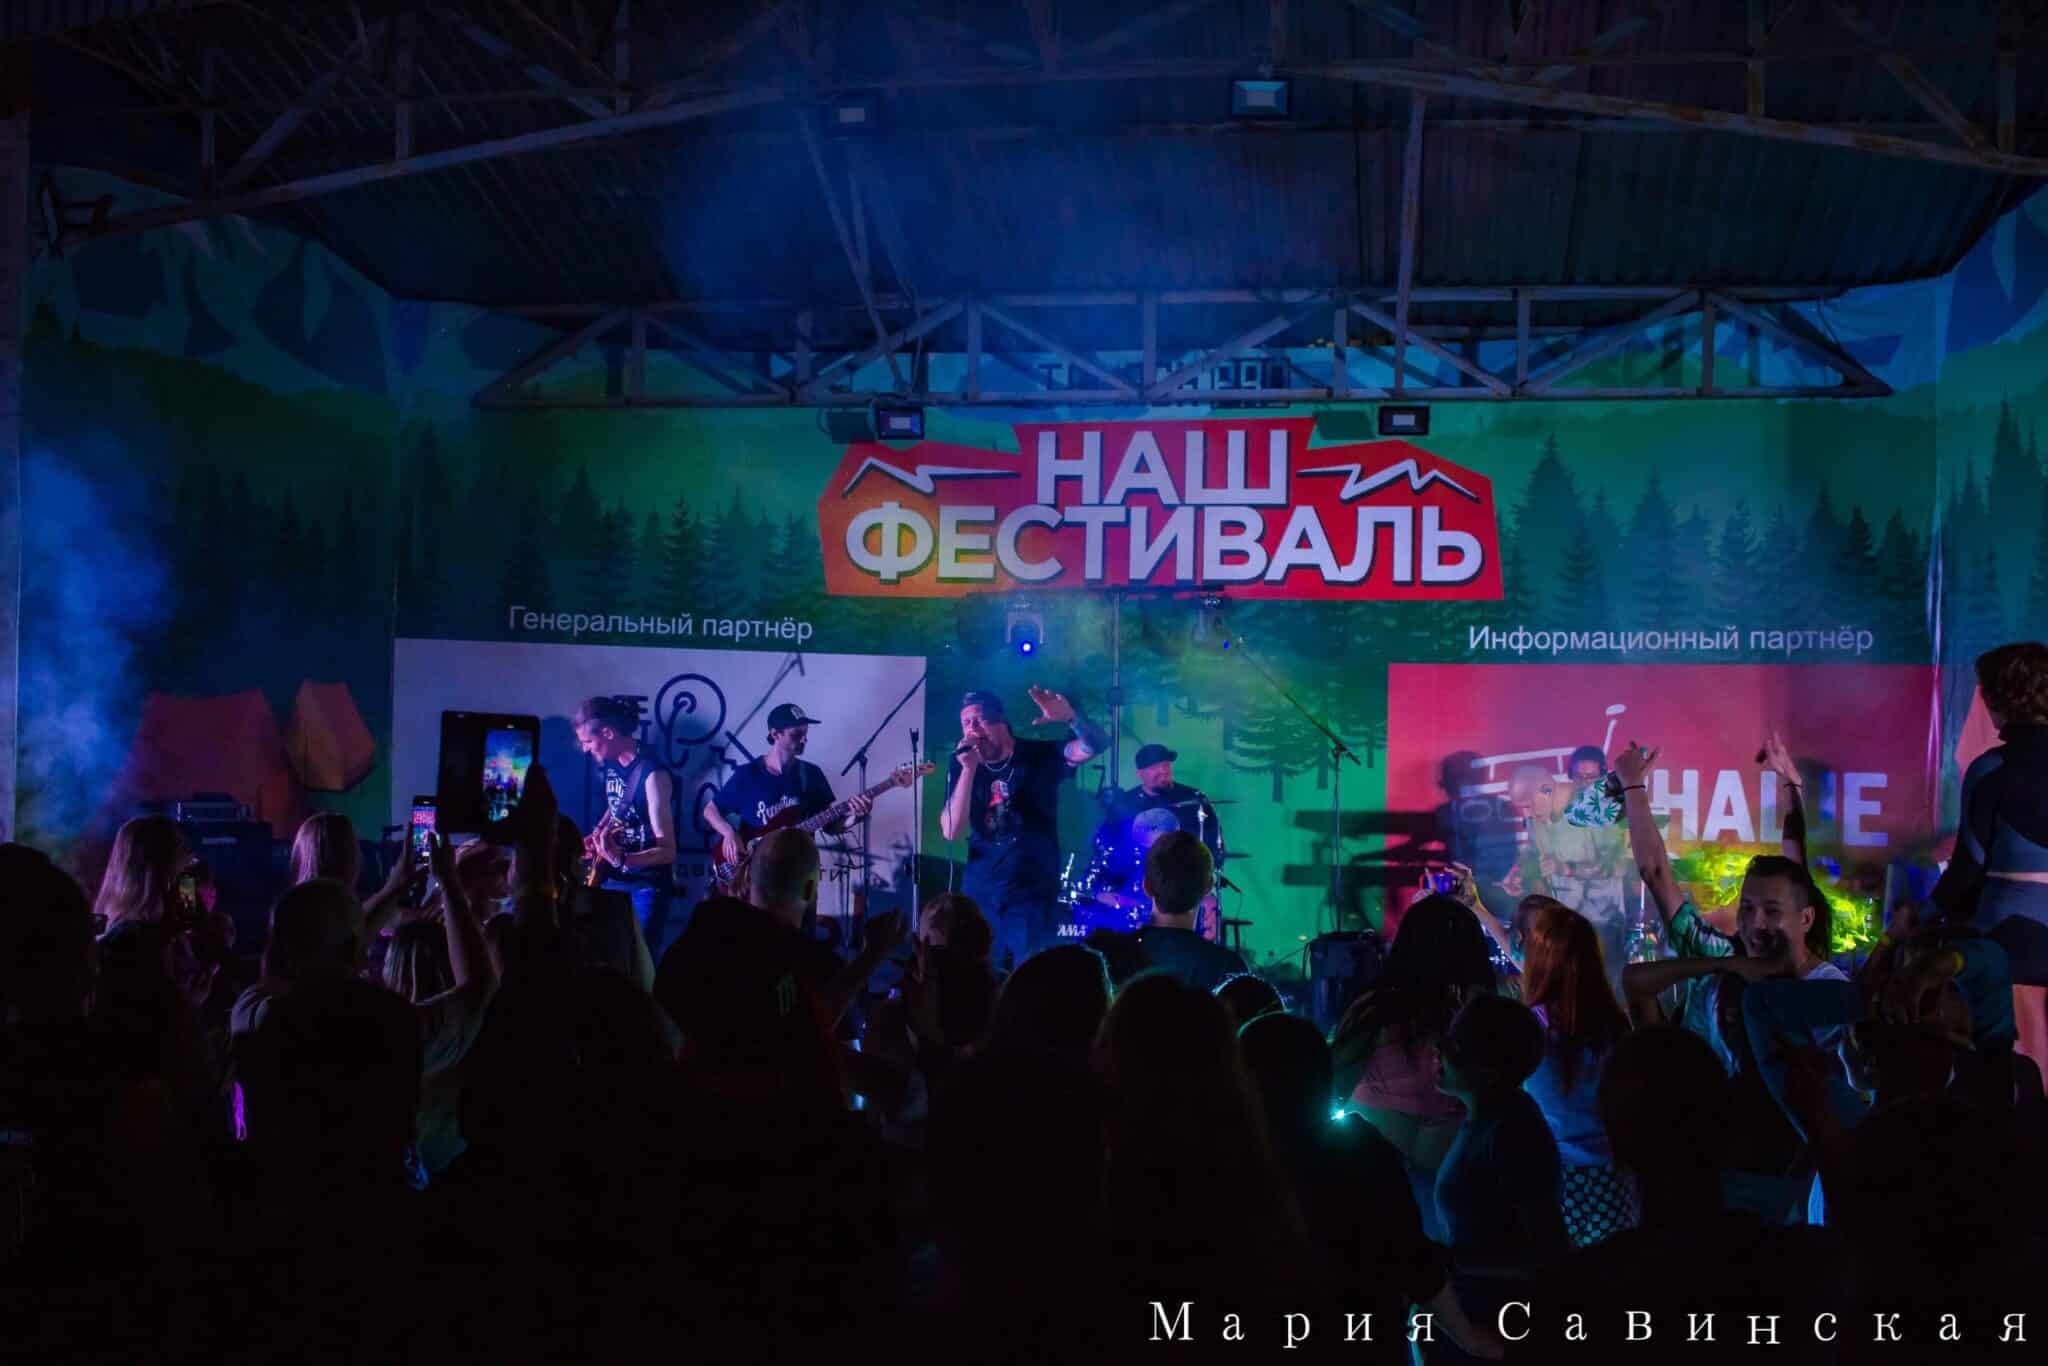 Интервью с музыкантами омской кавер-группы "Назаре"